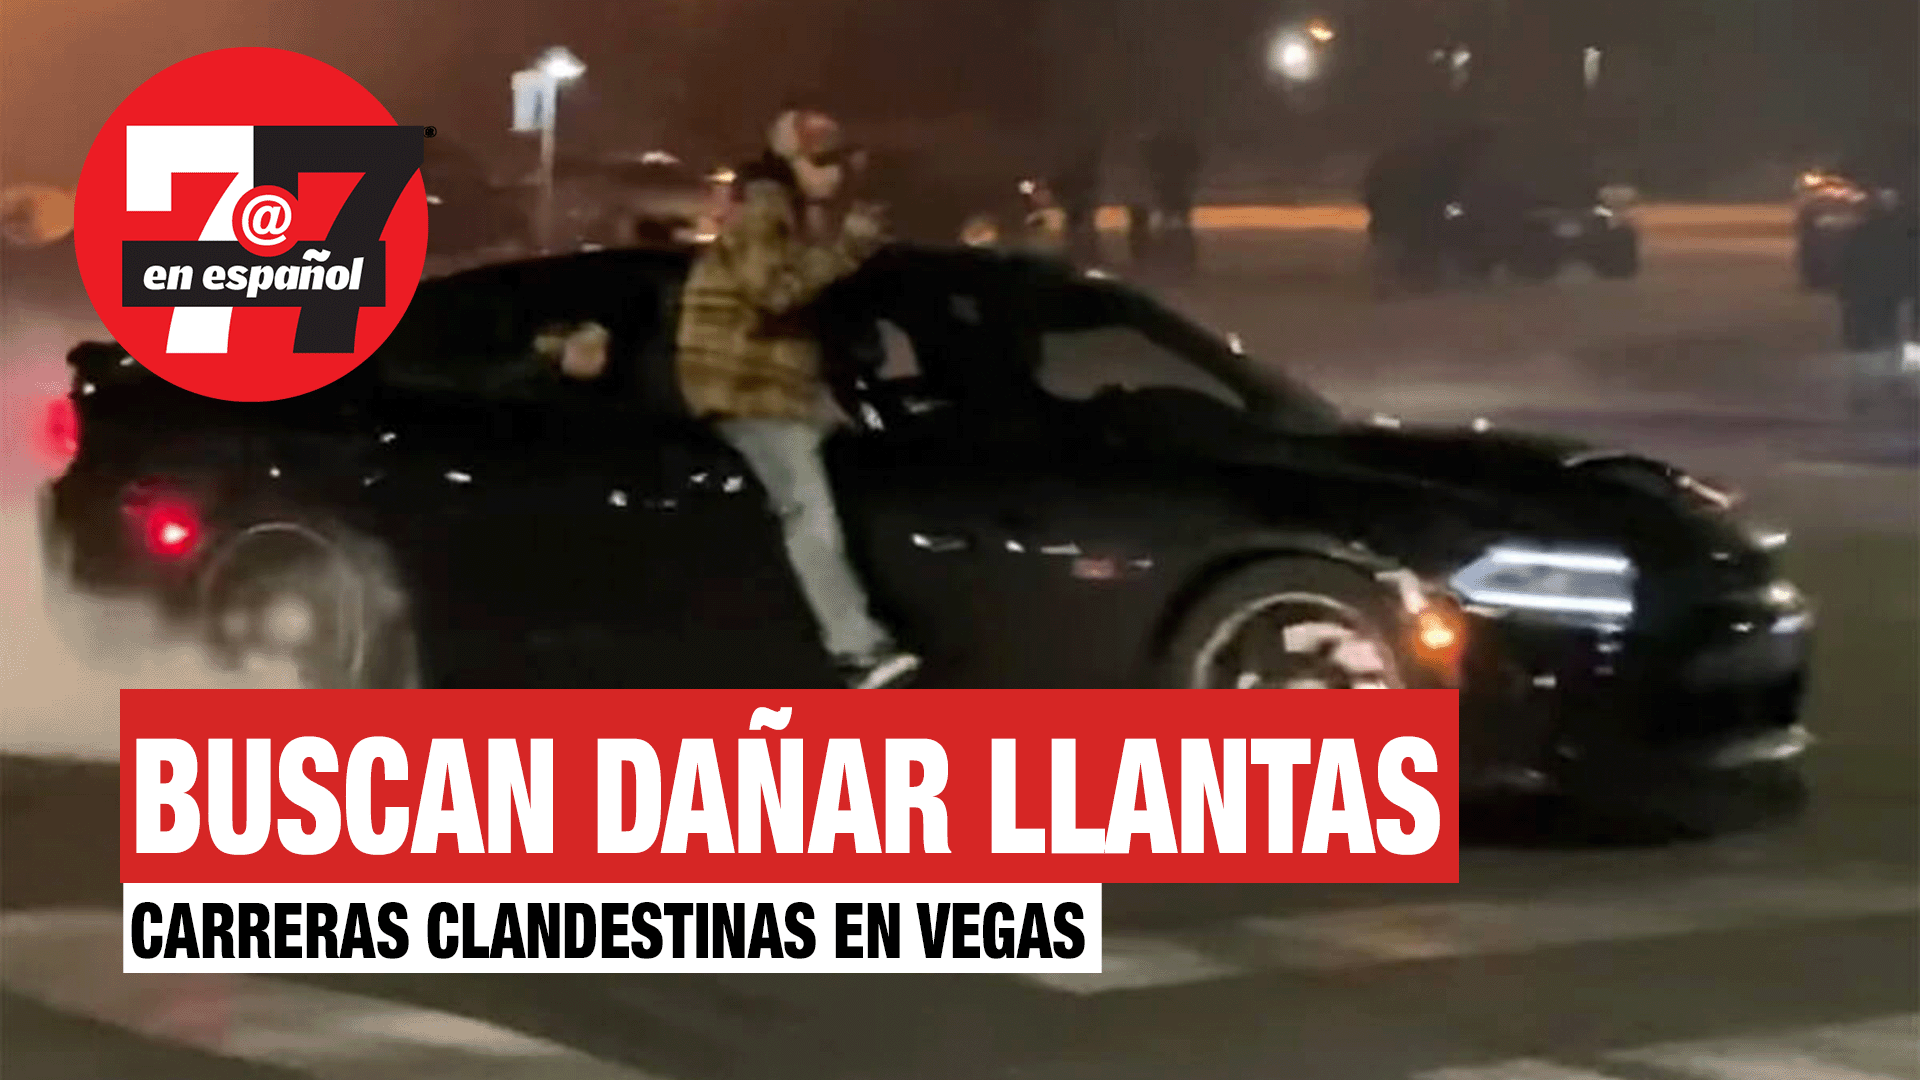 Noticias de Las Vegas | Carreras clandestinas causan cambios para dañar llantas